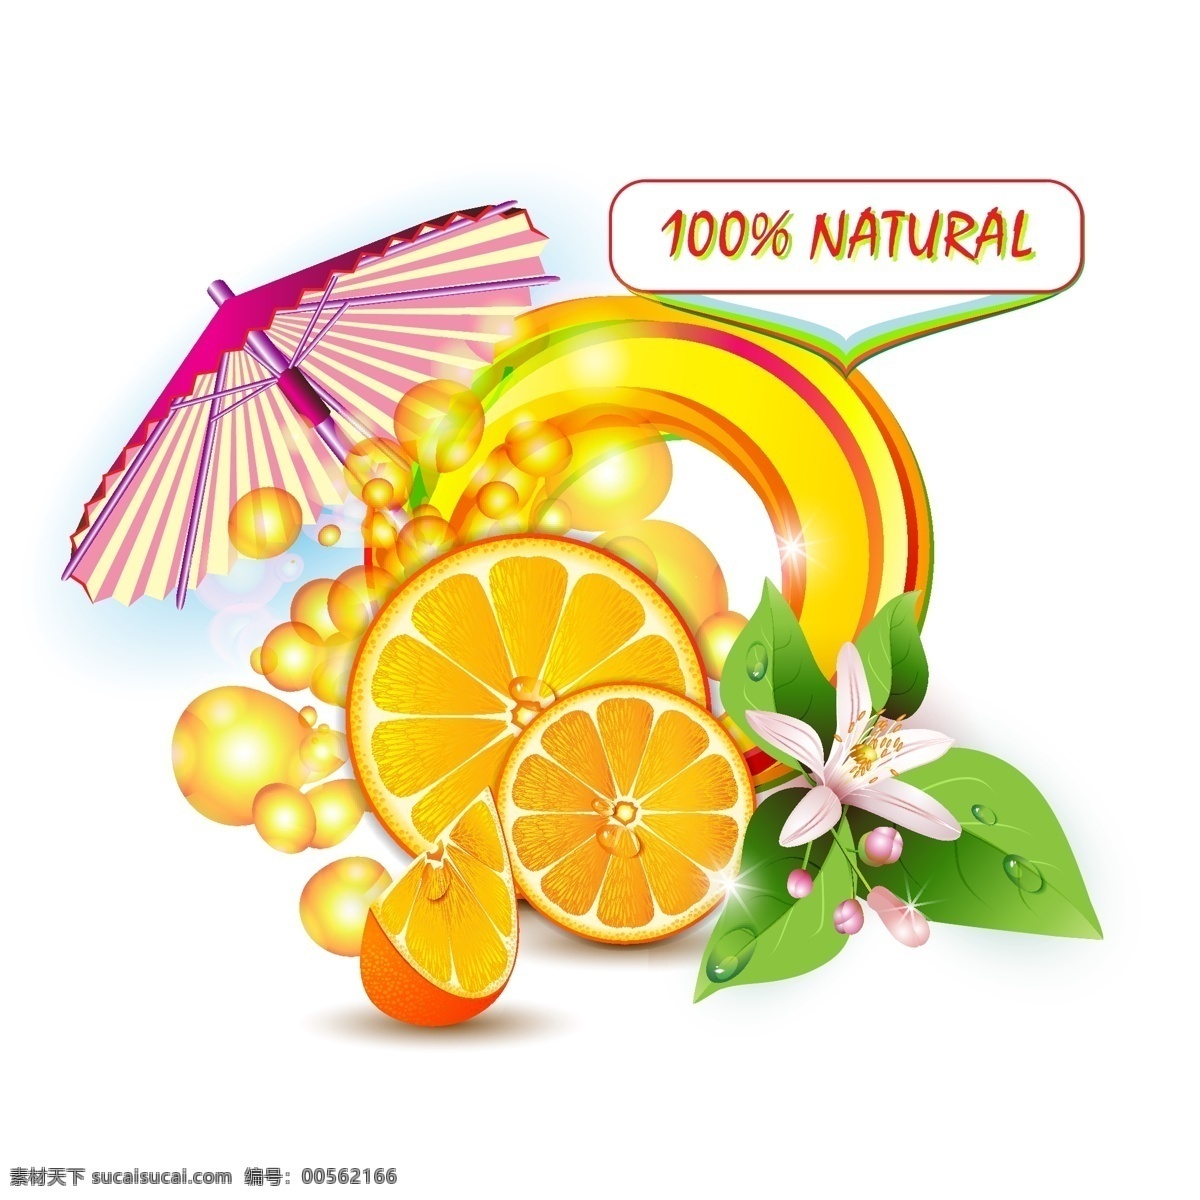 橙子 橙汁 新鲜水果 新鲜 西柚 绿叶 花卉 水珠 饮料 水果 柑橘 桔子 矢量素材 生物世界 矢量